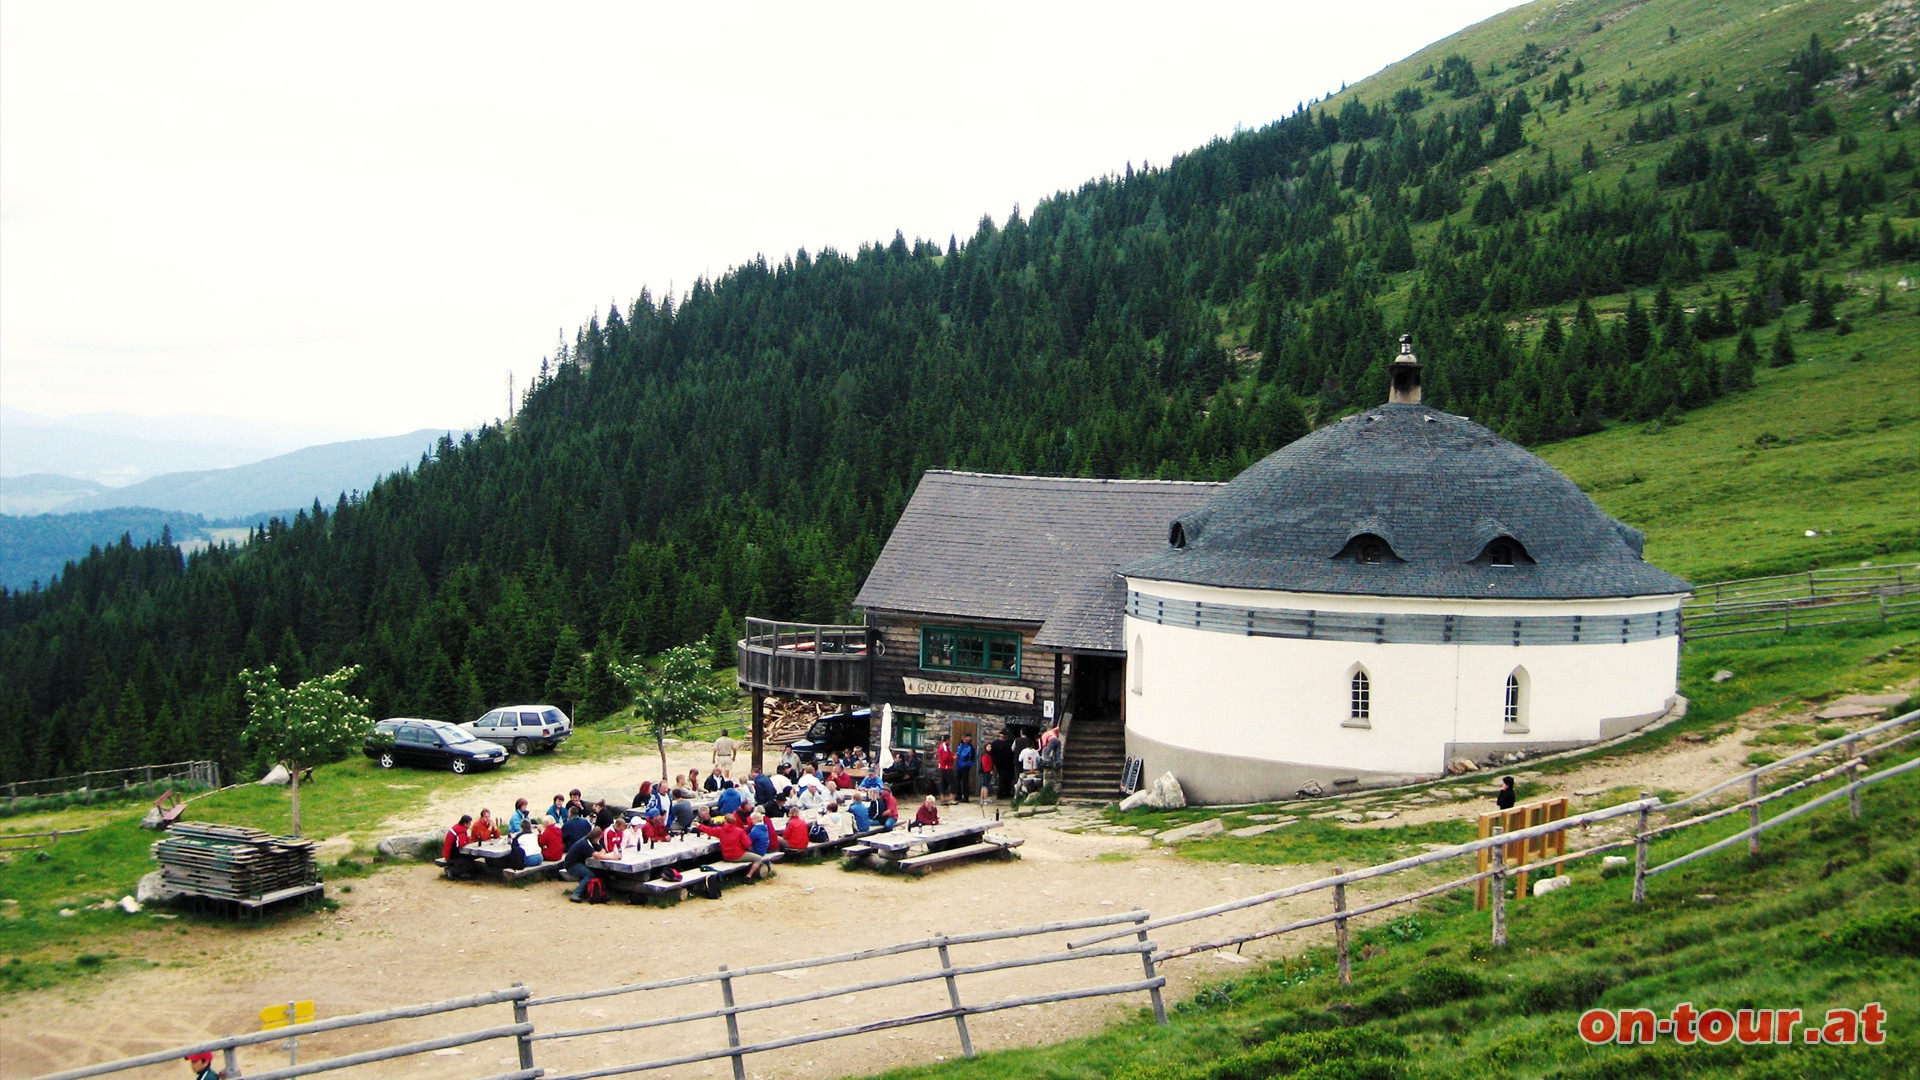 Grillitschhütte